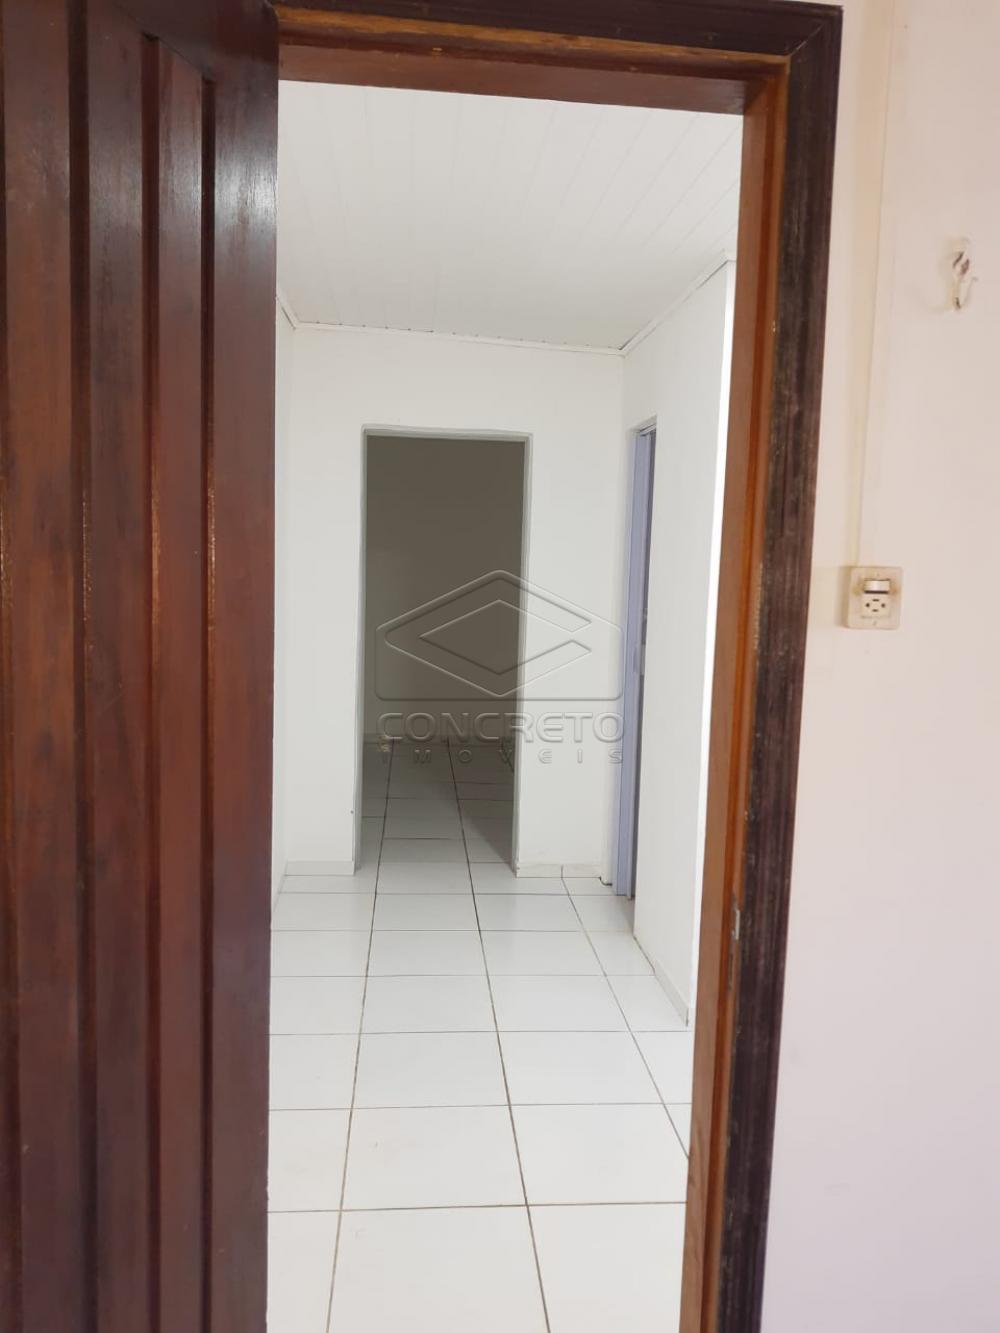 Comprar Casa / Residencia em Bauru R$ 350.000,00 - Foto 9